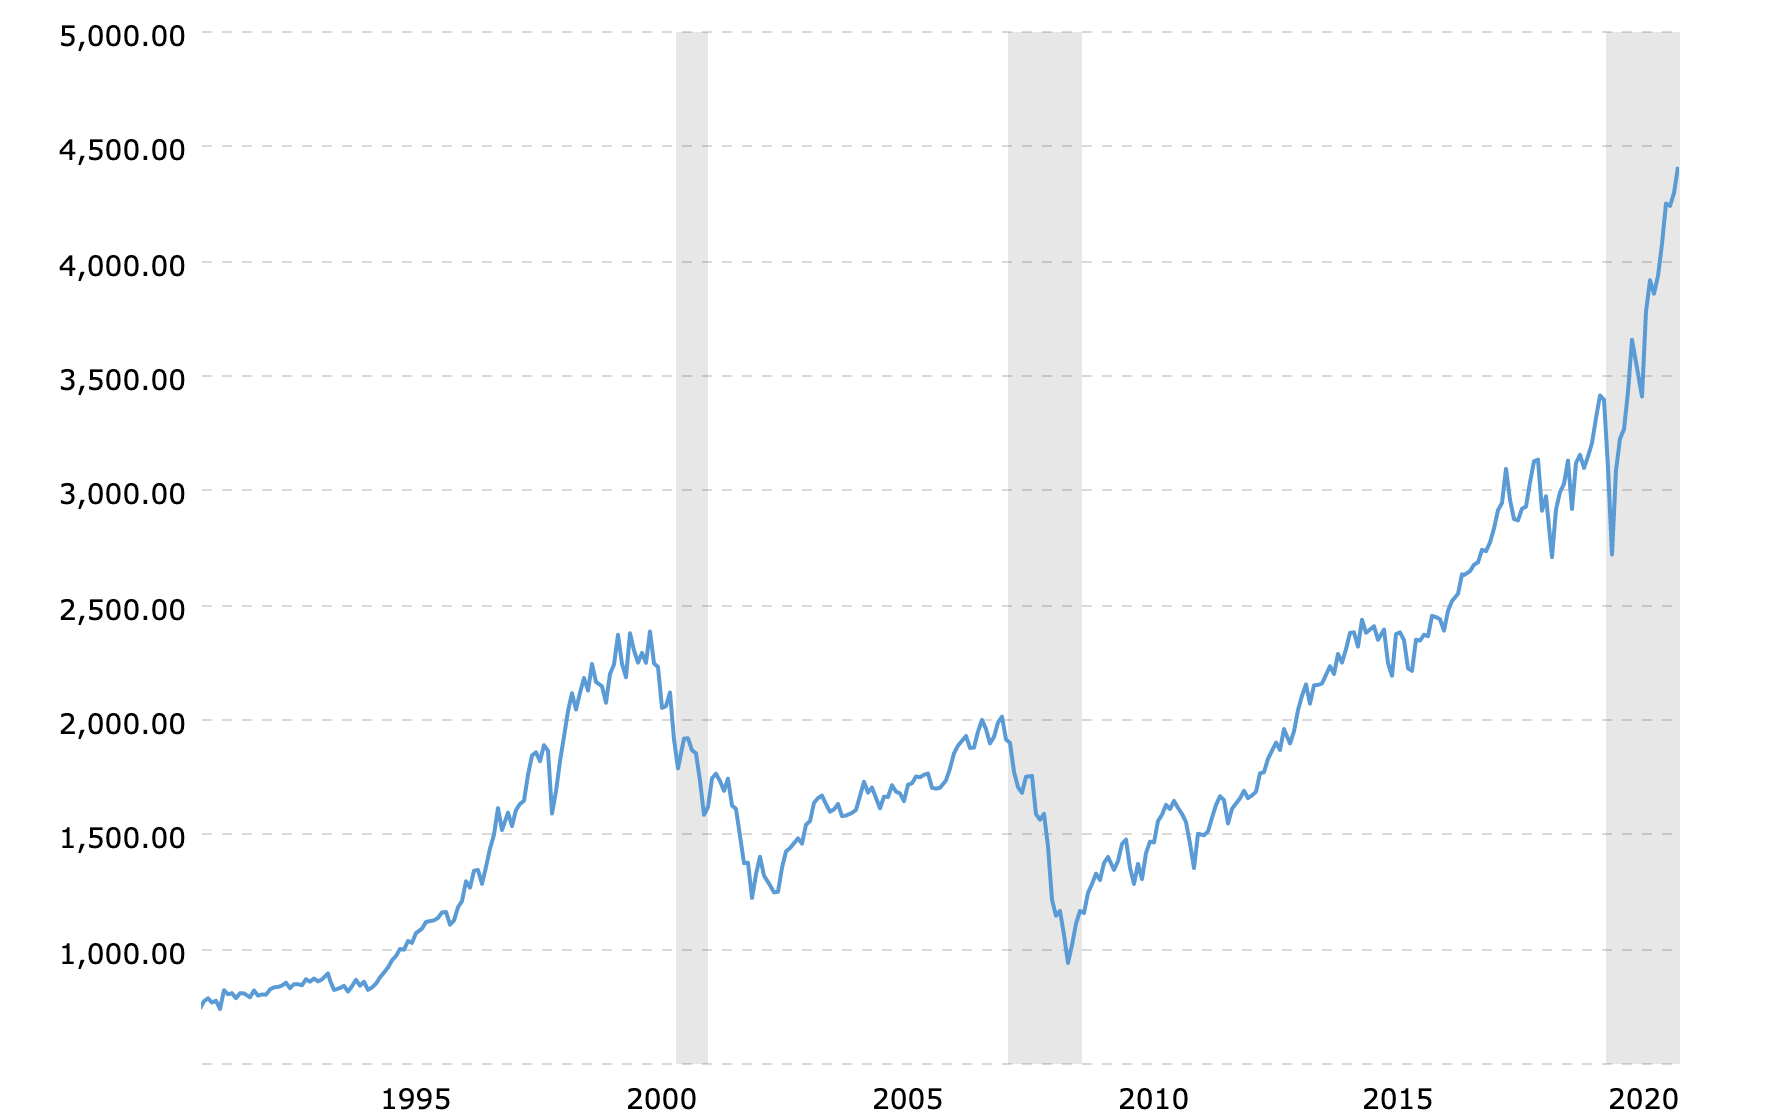 30 Year S&P 500 returns